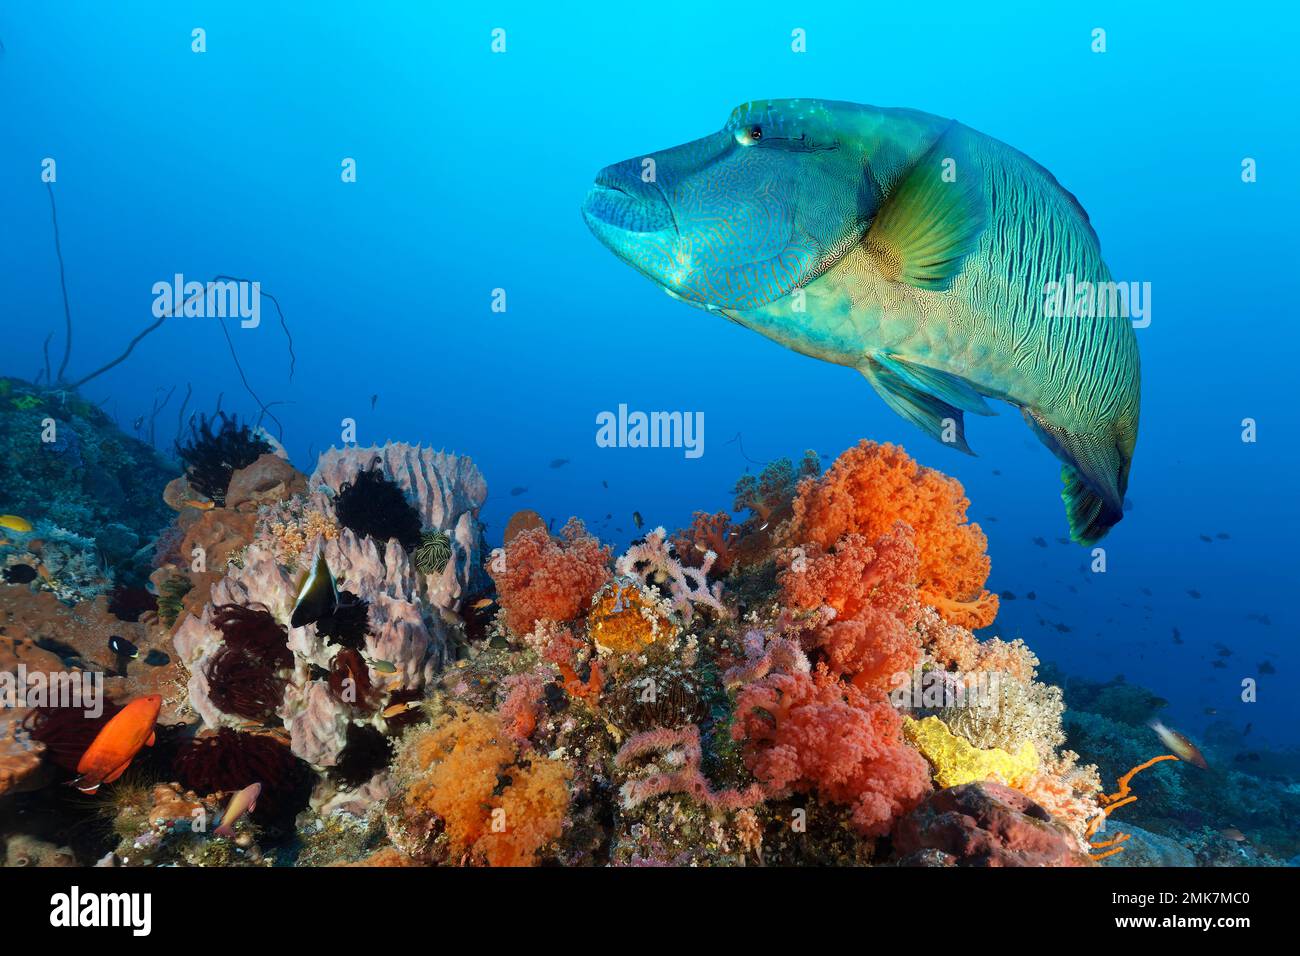 Napoleon-Humphead-Rasse (Cheilinus undulatus), ausgewachsen, schwimmt über Korallenriff dicht bedeckt mit Korallen, Schwämmen und niederen Tieren, unterhalb der Lippen Stockfoto